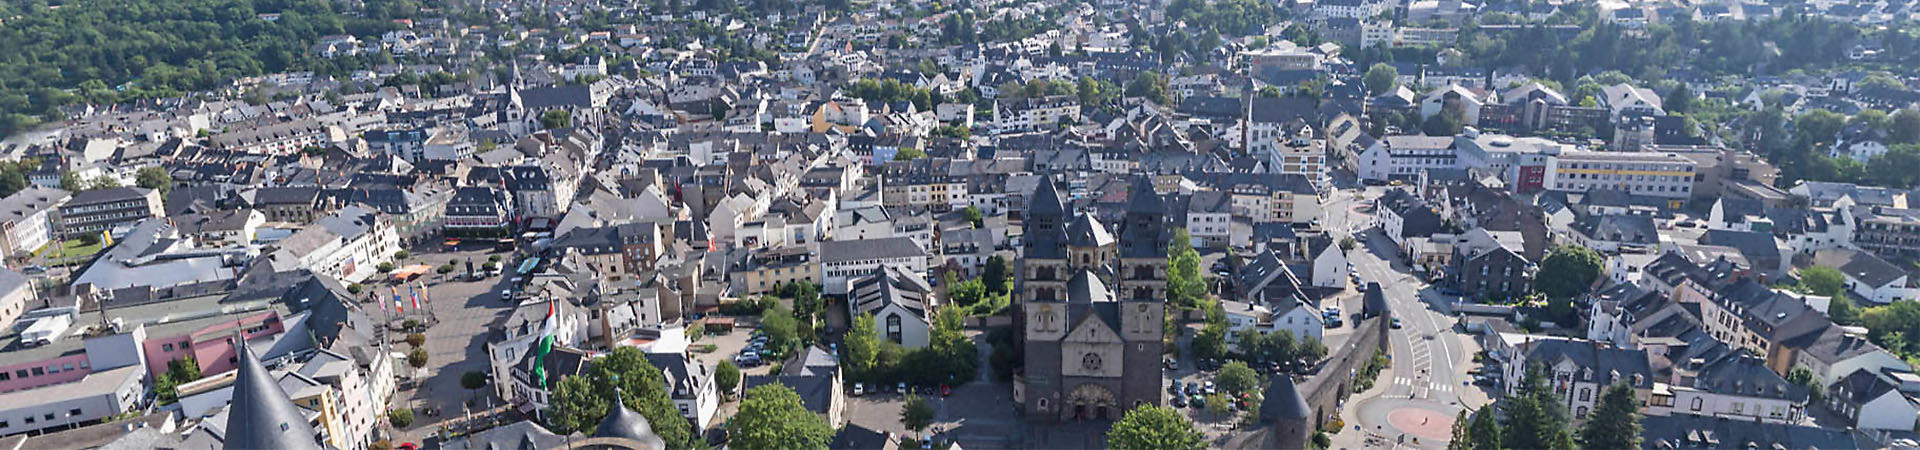 Luftbild der Stadt Mayen mit der Herz Jesu Kirche im Vordergrund